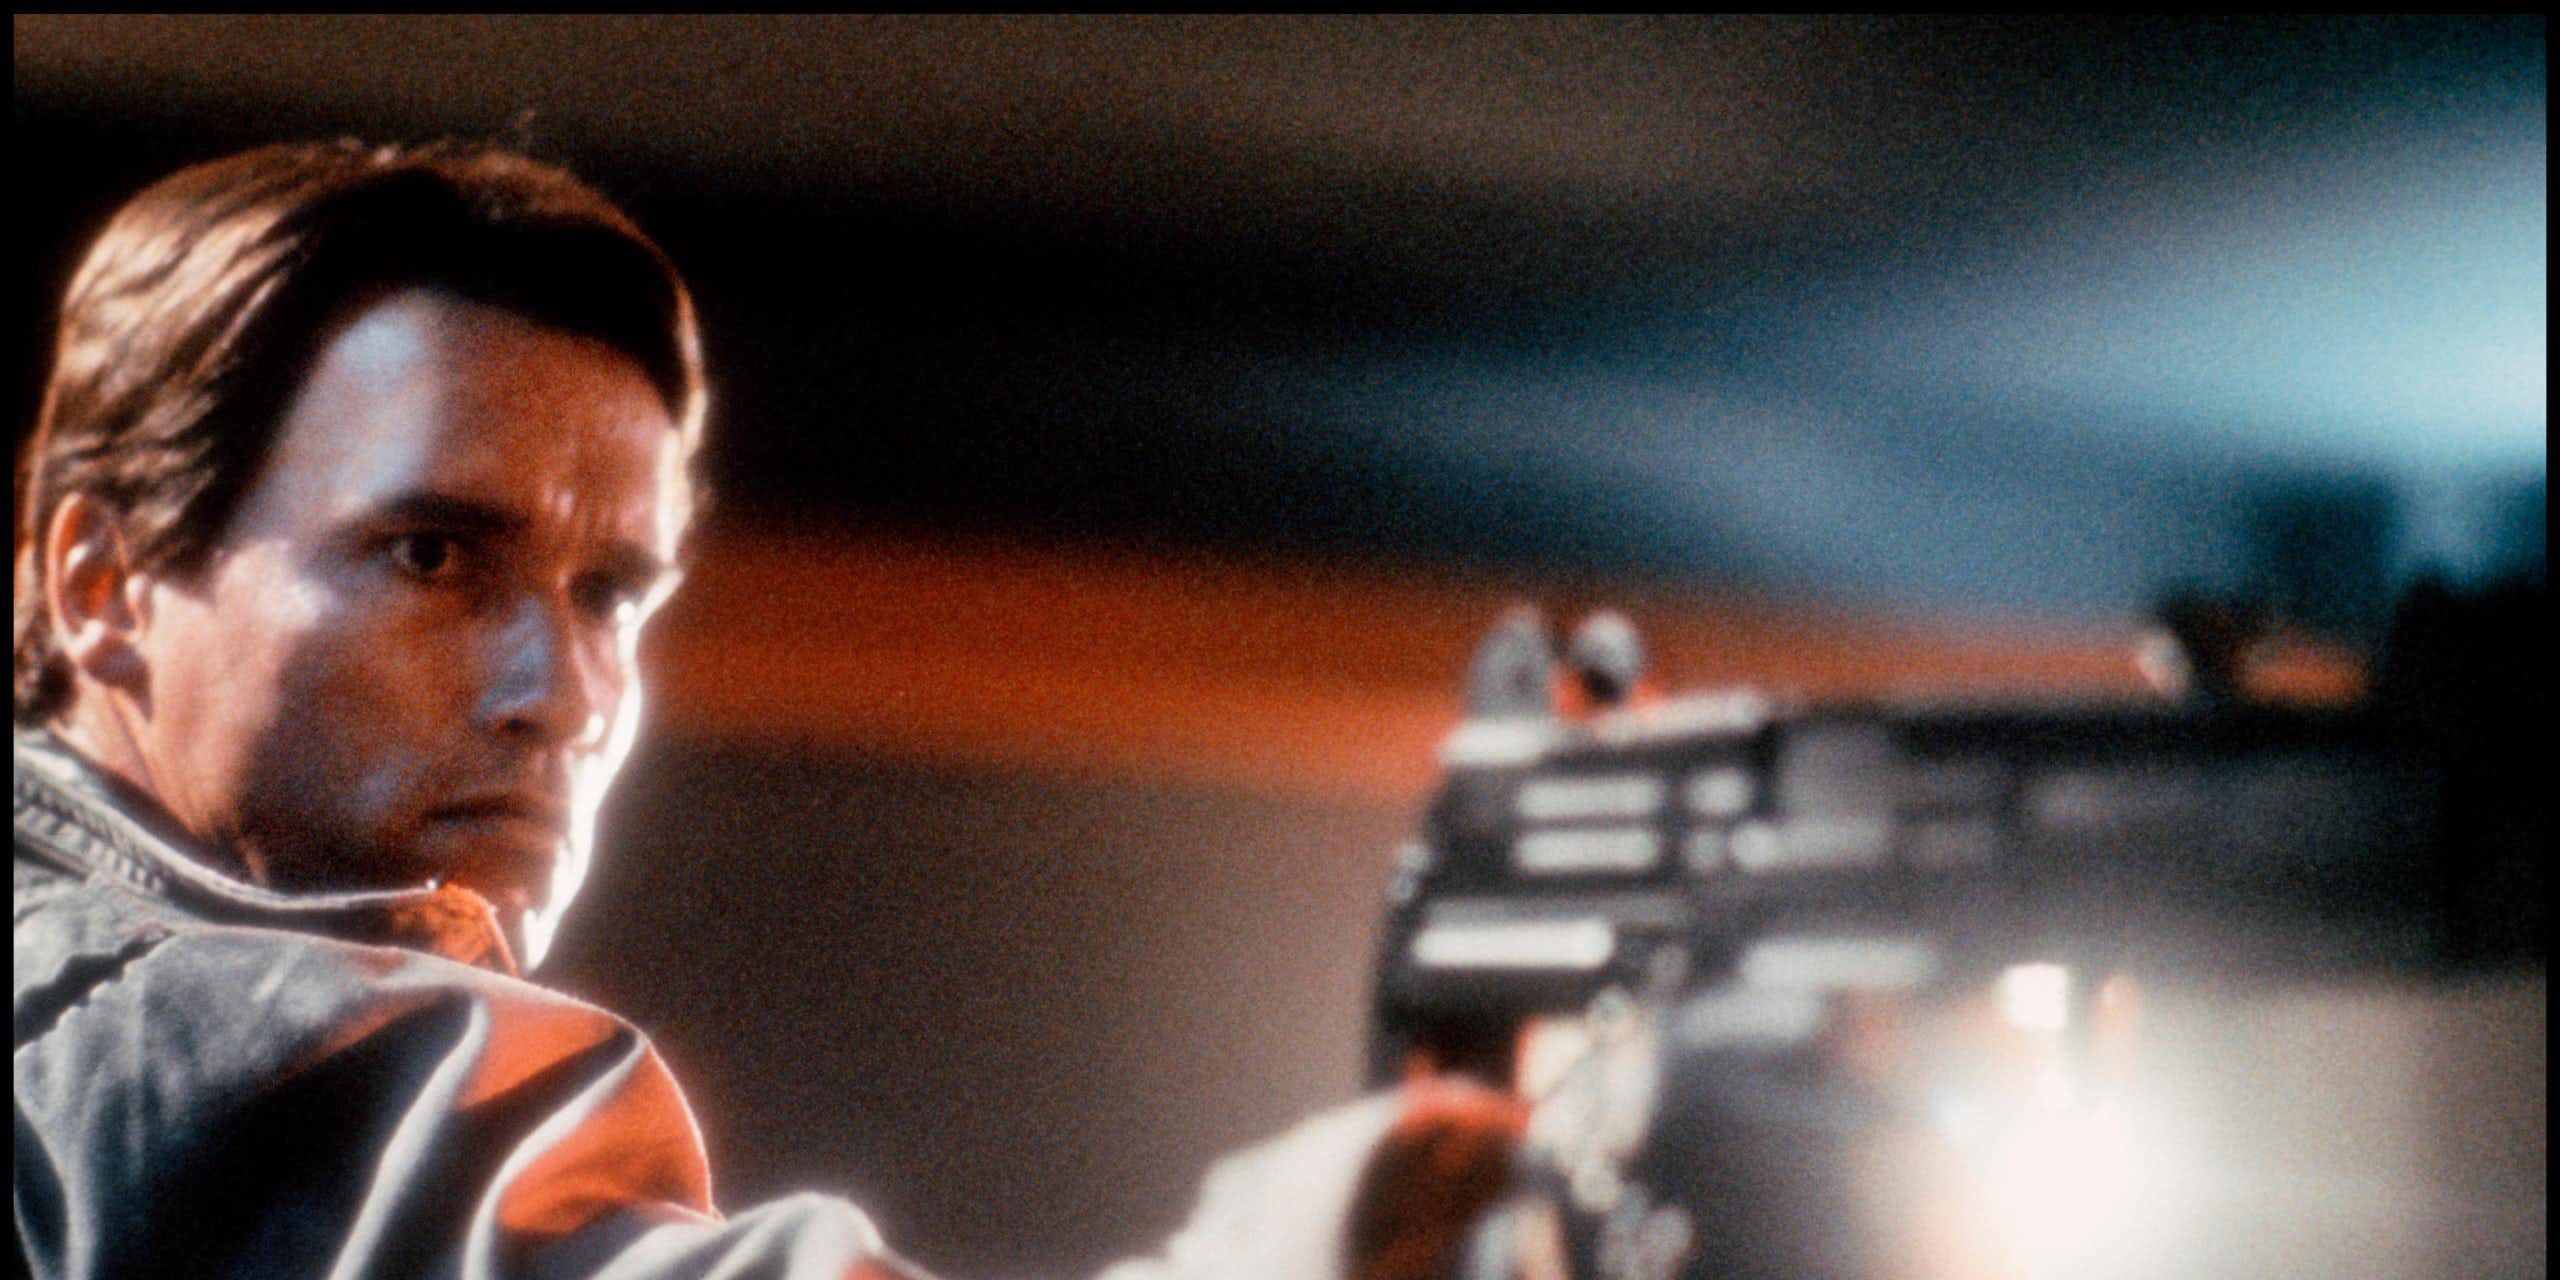 Arnold Schwarzenegger in The Terminator holding a gun